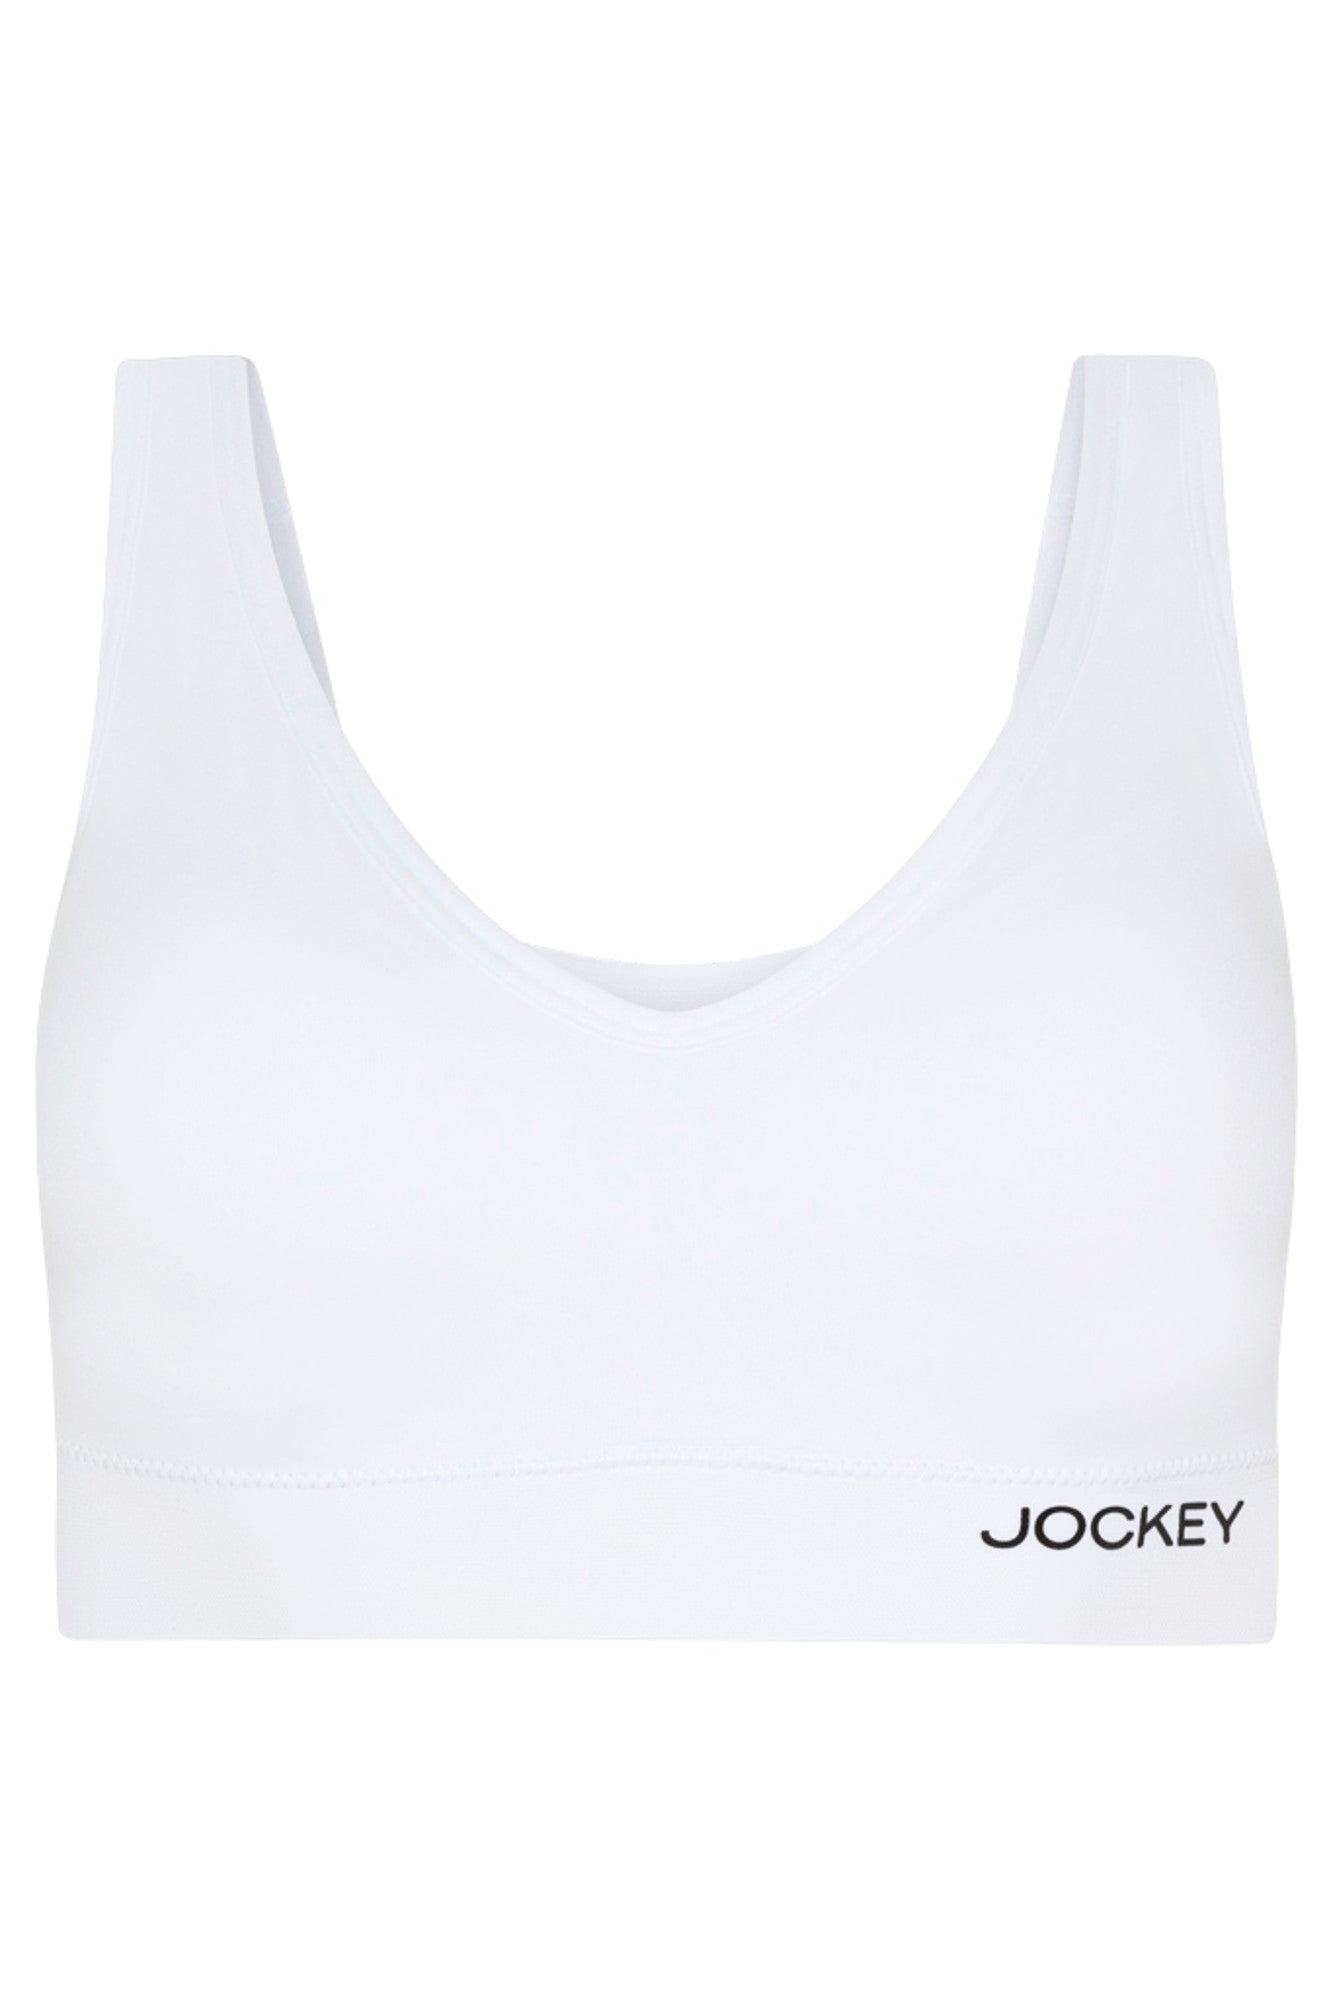 Buy Jockey Jockey White Cotton Sports Bra at Redfynd